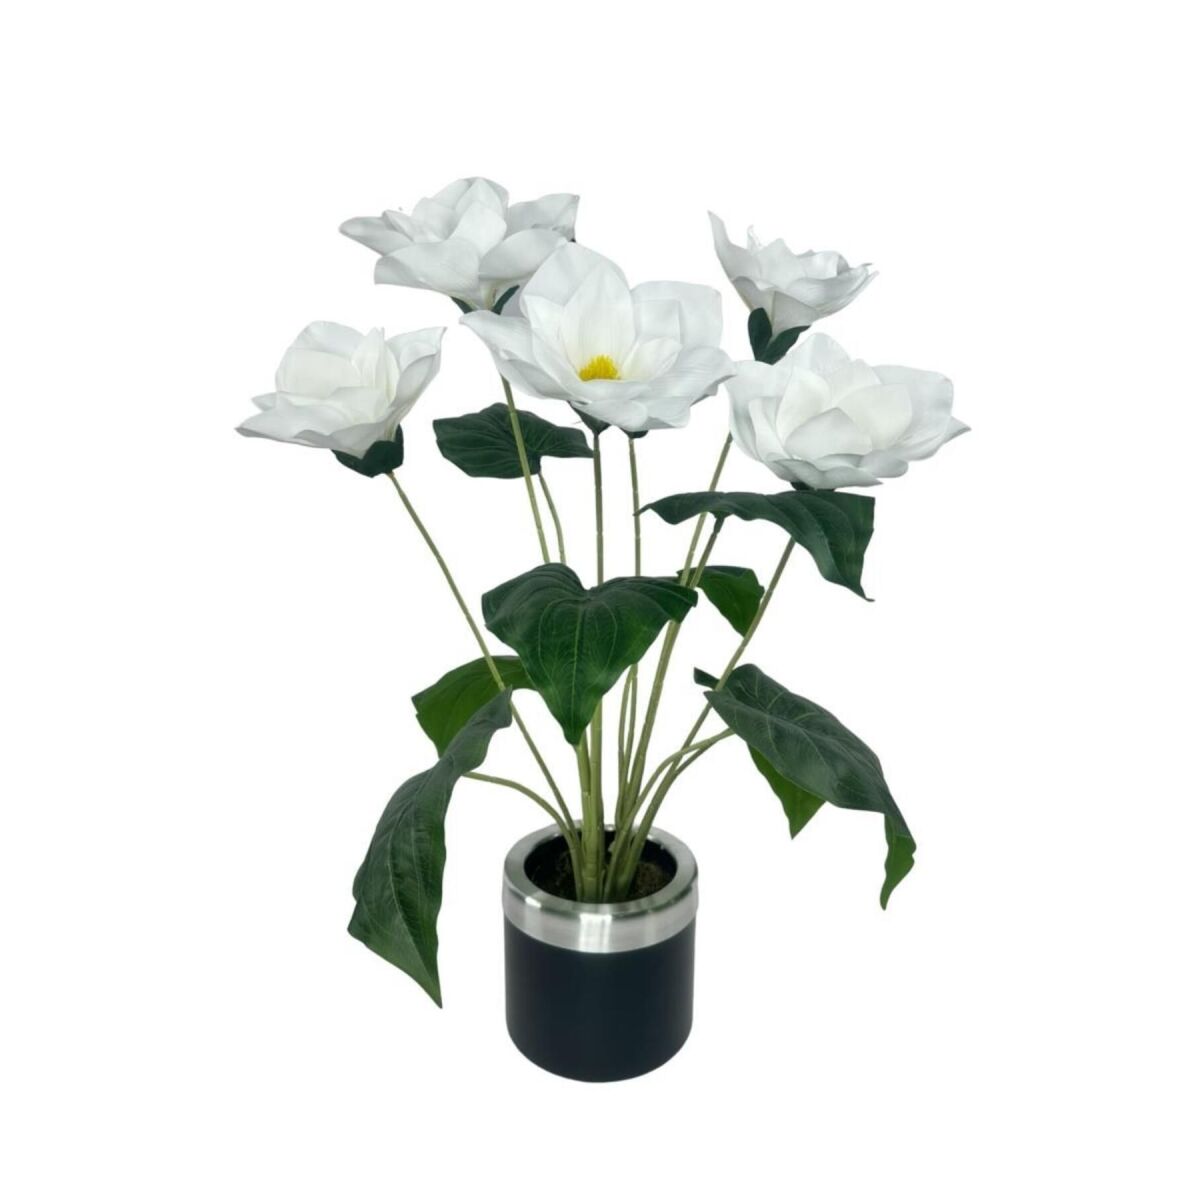 Yapay Çiçek Islak Manolya Çiçeği 6 Çiçekli 65Cm Gümüş Halkalı Galvaniz Vazoda Salon Çiçeği